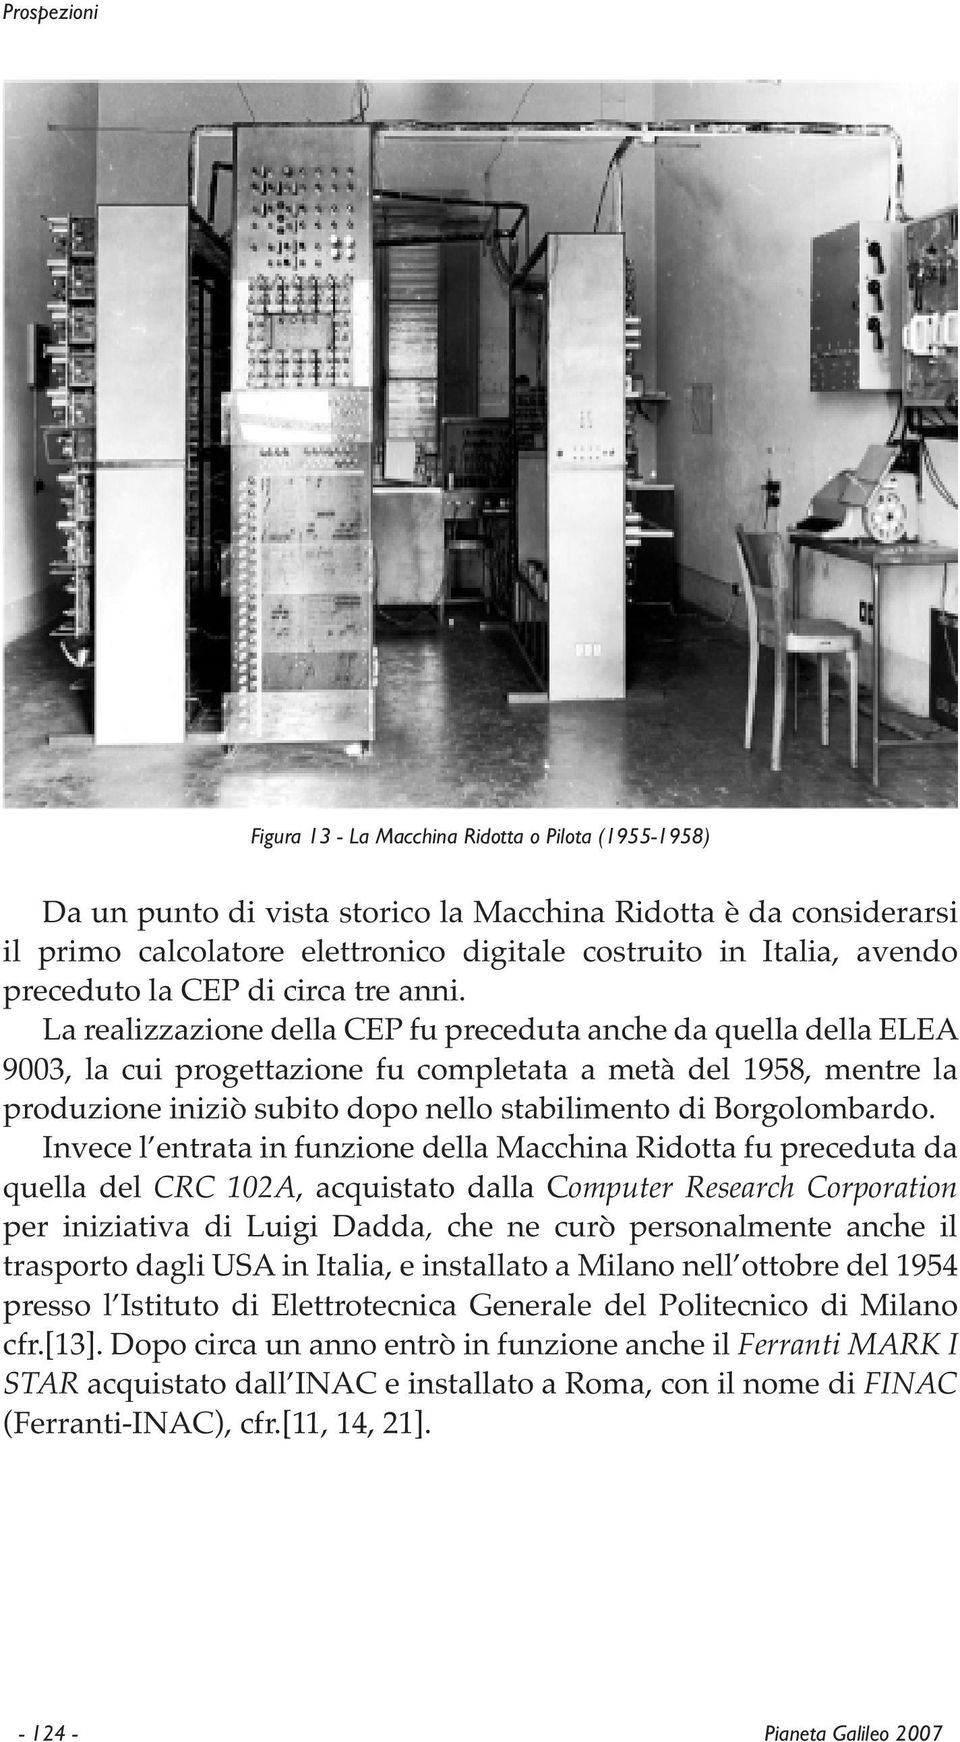 La realizzazione della CEP fu preceduta anche da quella della ELEA 9003, la cui progettazione fu completata a metà del 1958, mentre la produzione iniziò subito dopo nello stabilimento di